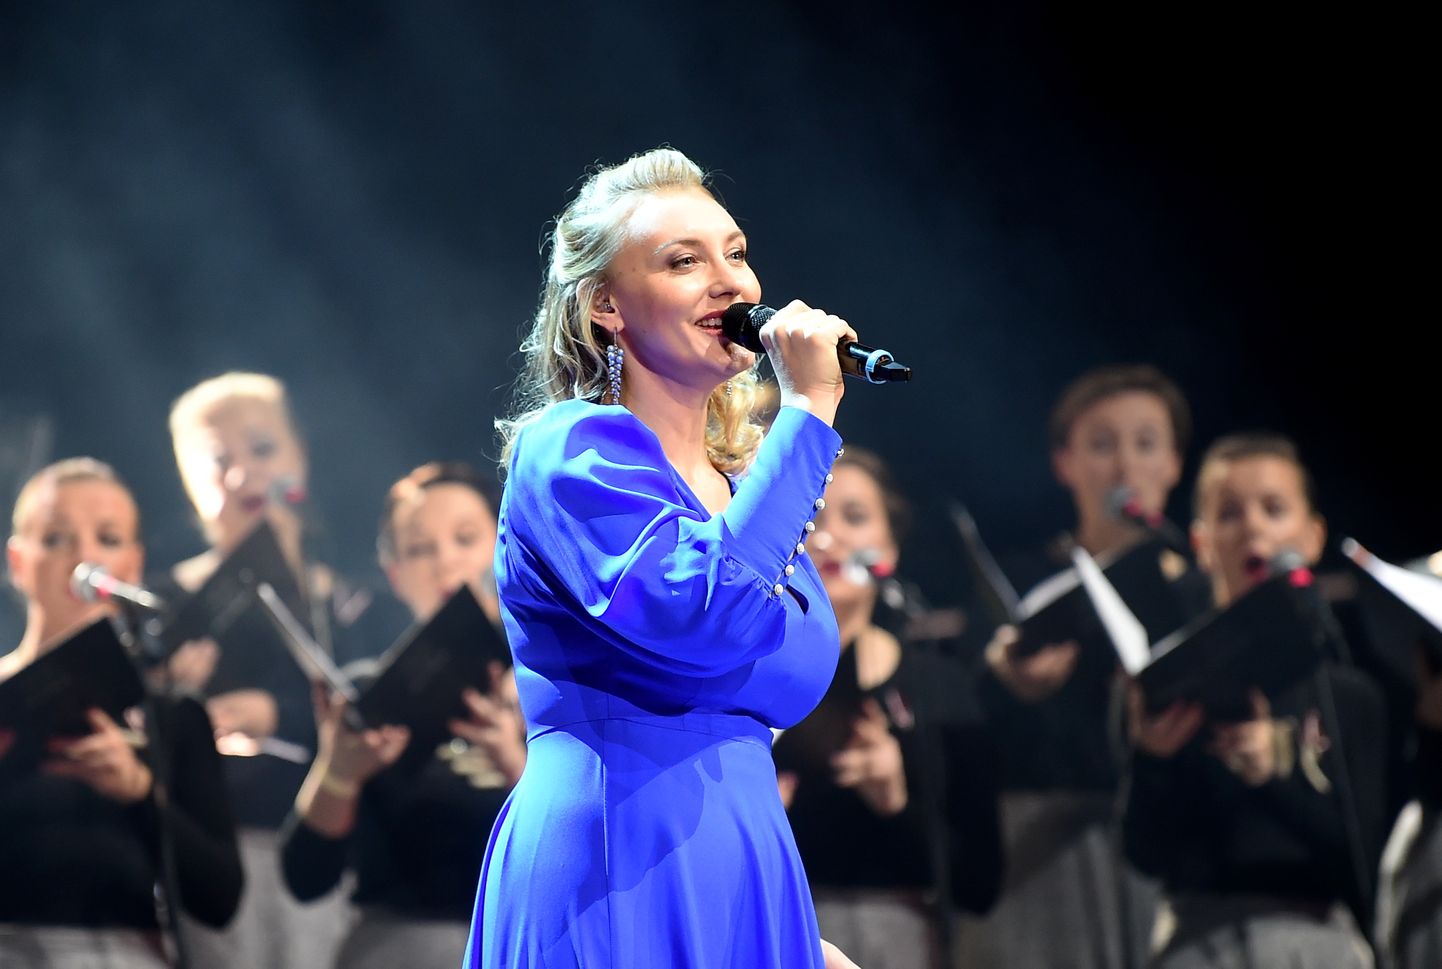 Dziedātāja Anmary (Linda Amantova) piedalās koncertuzvedumā "Laika vārti", kurā izskan pēdējo 30 gadu Latvijas spēcīgākās dziesmas un tiek izdejotas spēka dejas.